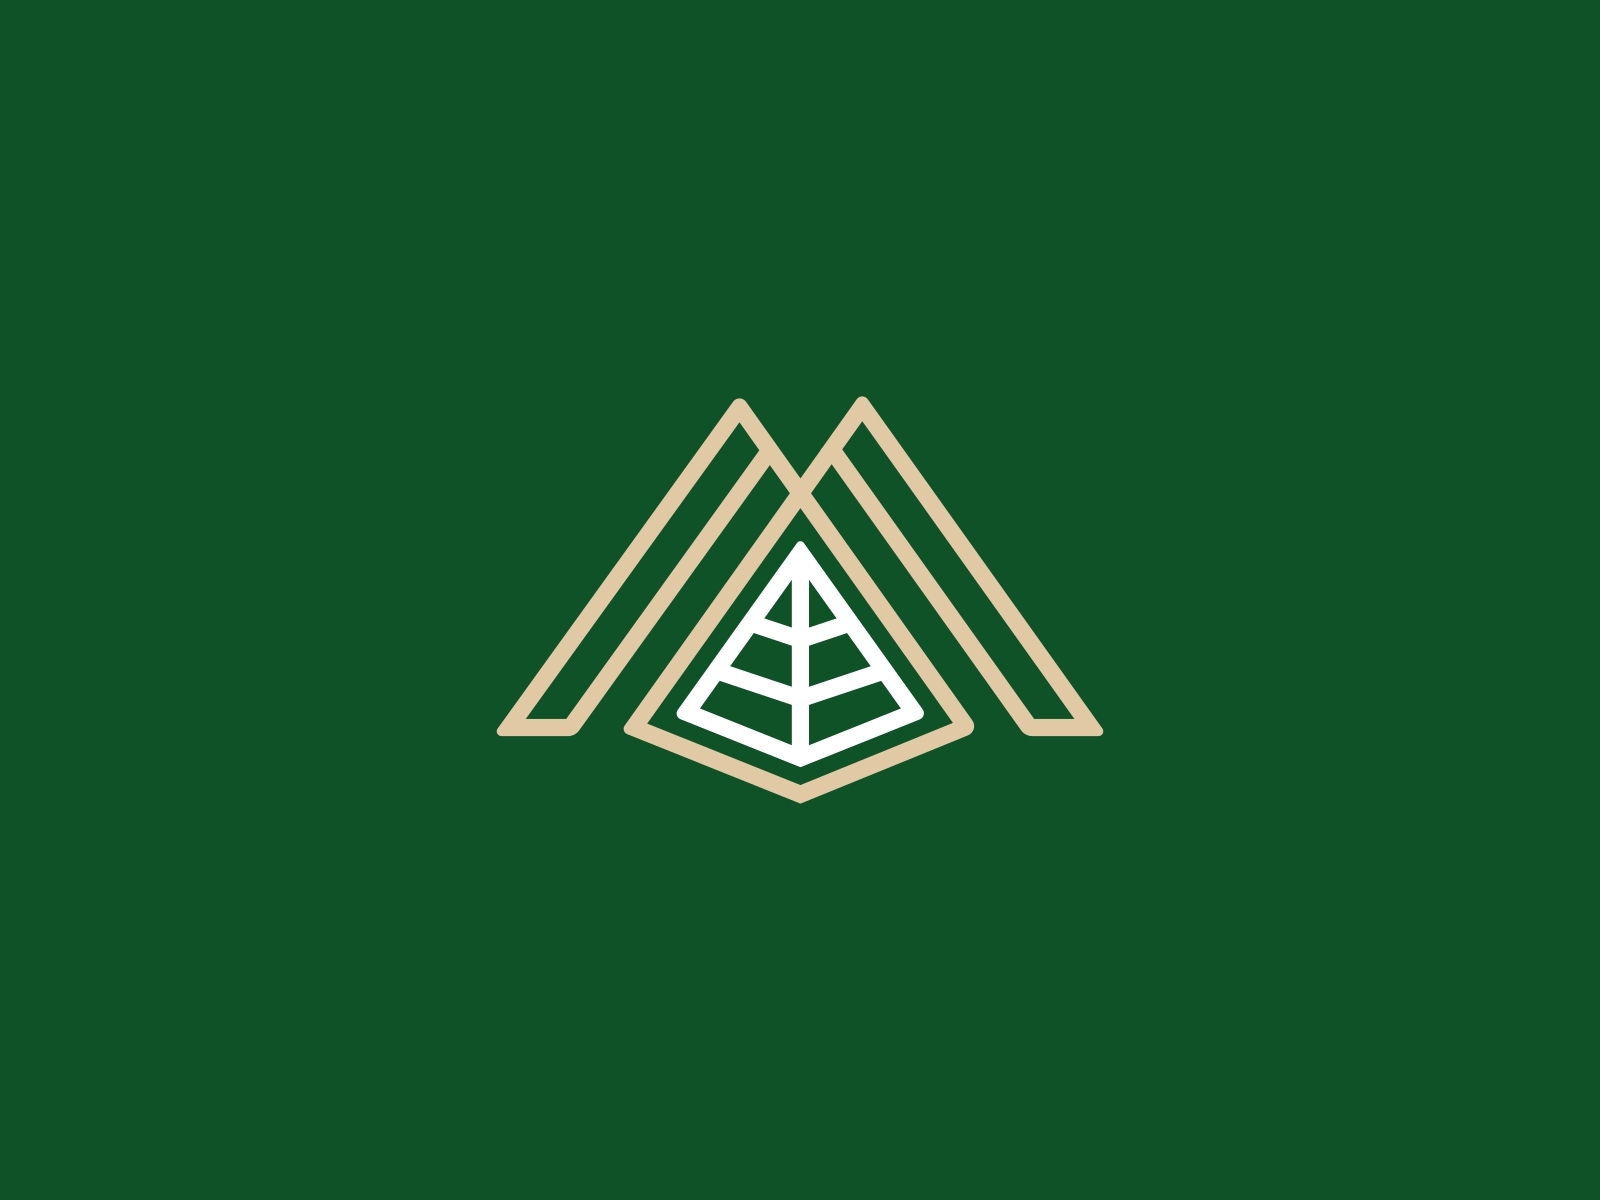 M Pyramid Logo by Iwan Yulianto on Dribbble